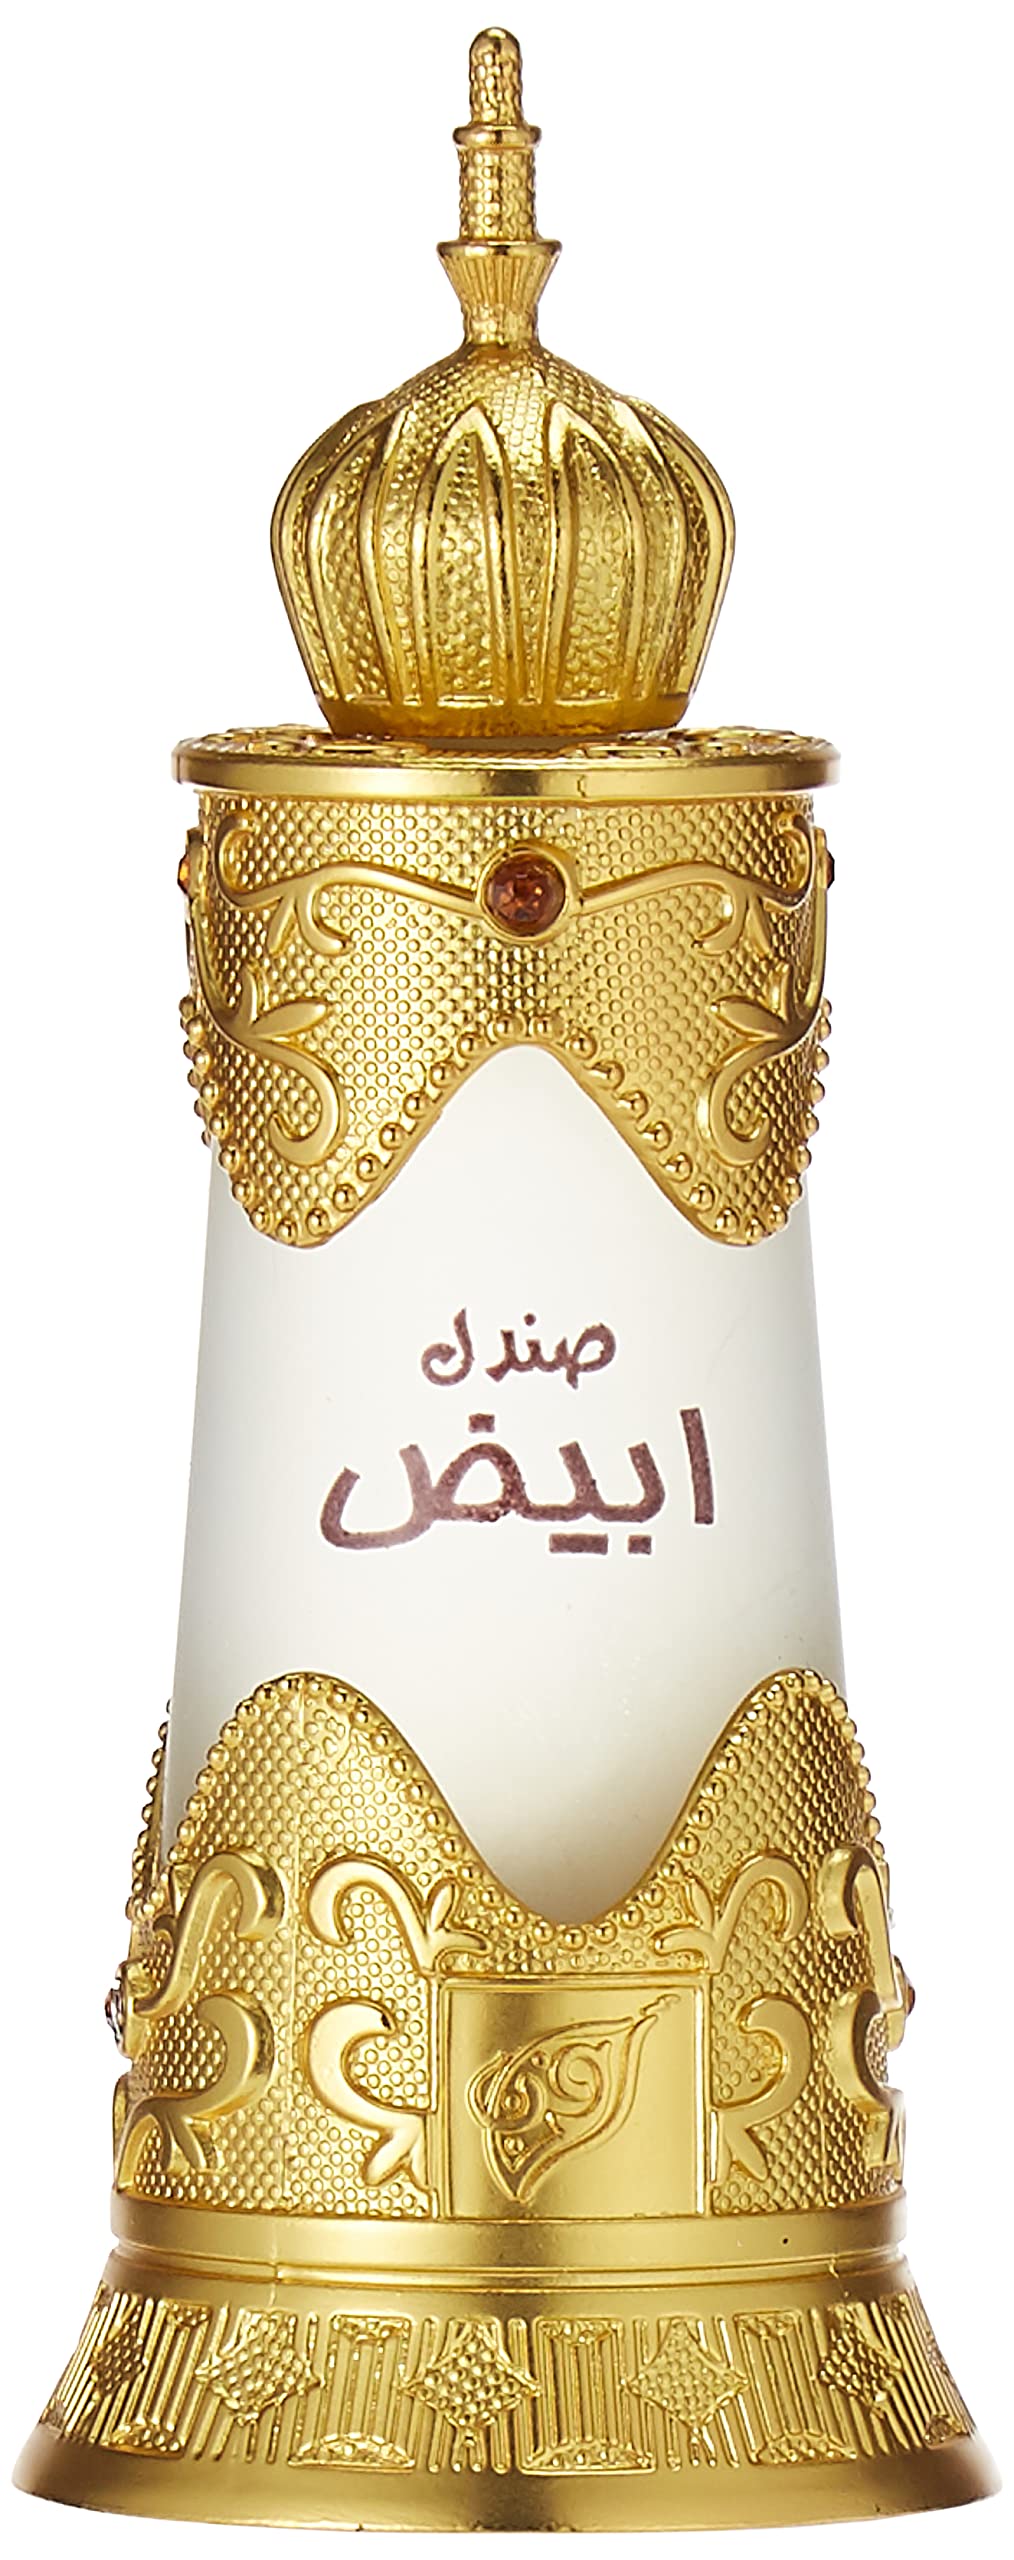 Afnan Sandal Abiyad - koncentrovaný parfémovaný olej 20 ml